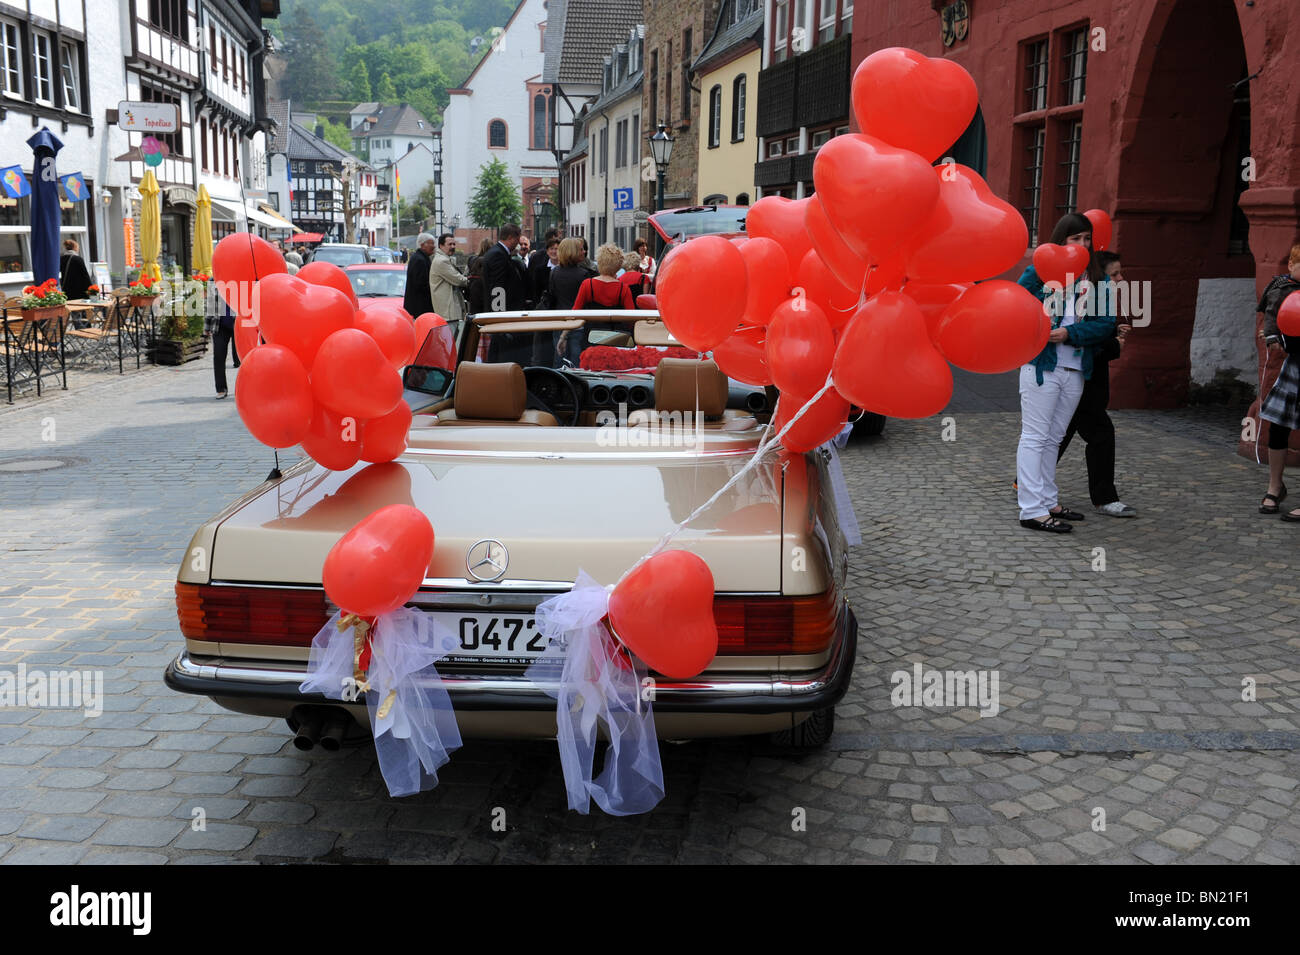 Voiture de mariage avec des ballons en forme de coeur rouge à Bad Munstereifel Allemagne Deutschland Europe Banque D'Images